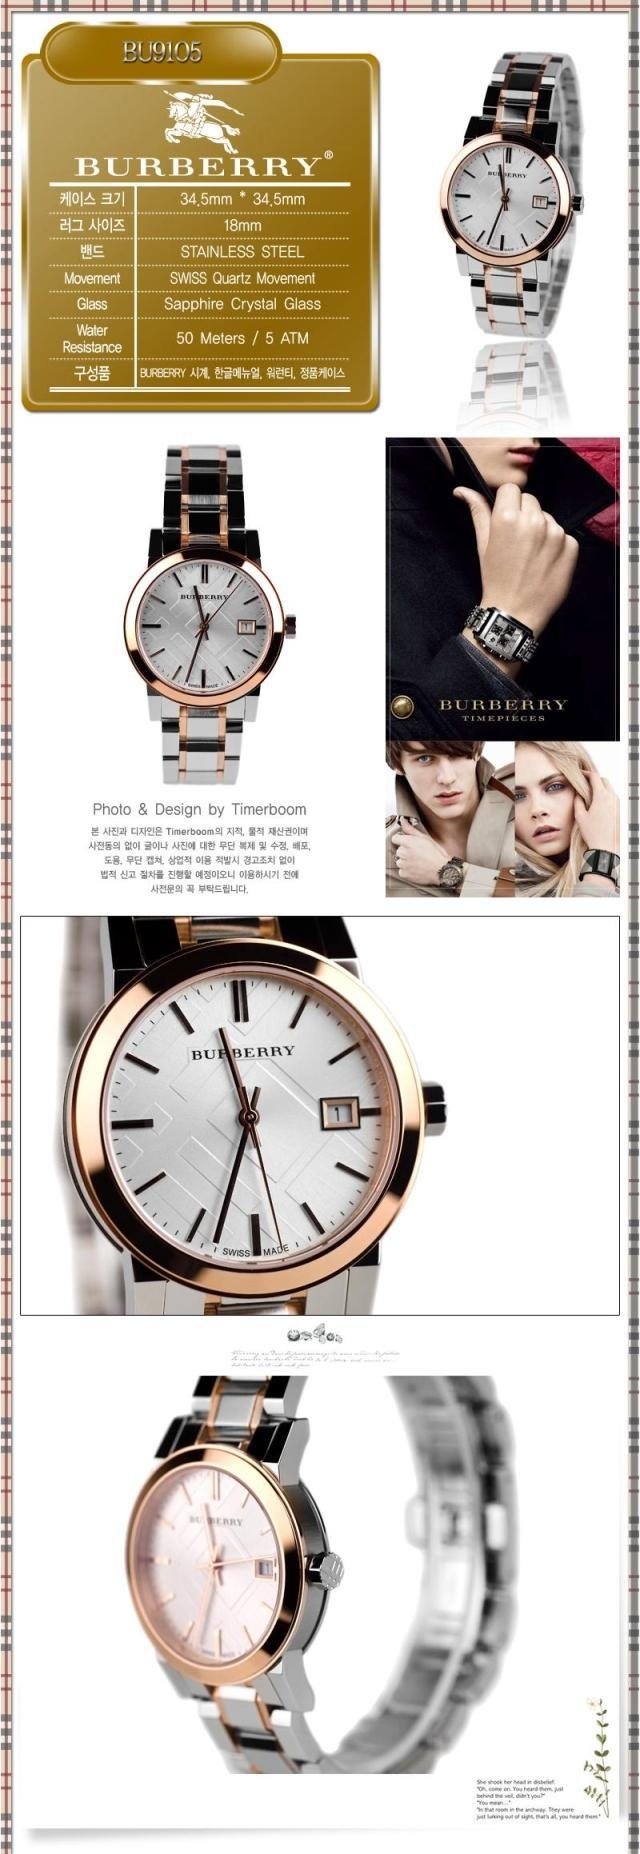 2022122814083062 - BURBERRY巴寶莉手錶 英倫風情時尚流行玫瑰金白色石英女錶BU9105￥1330